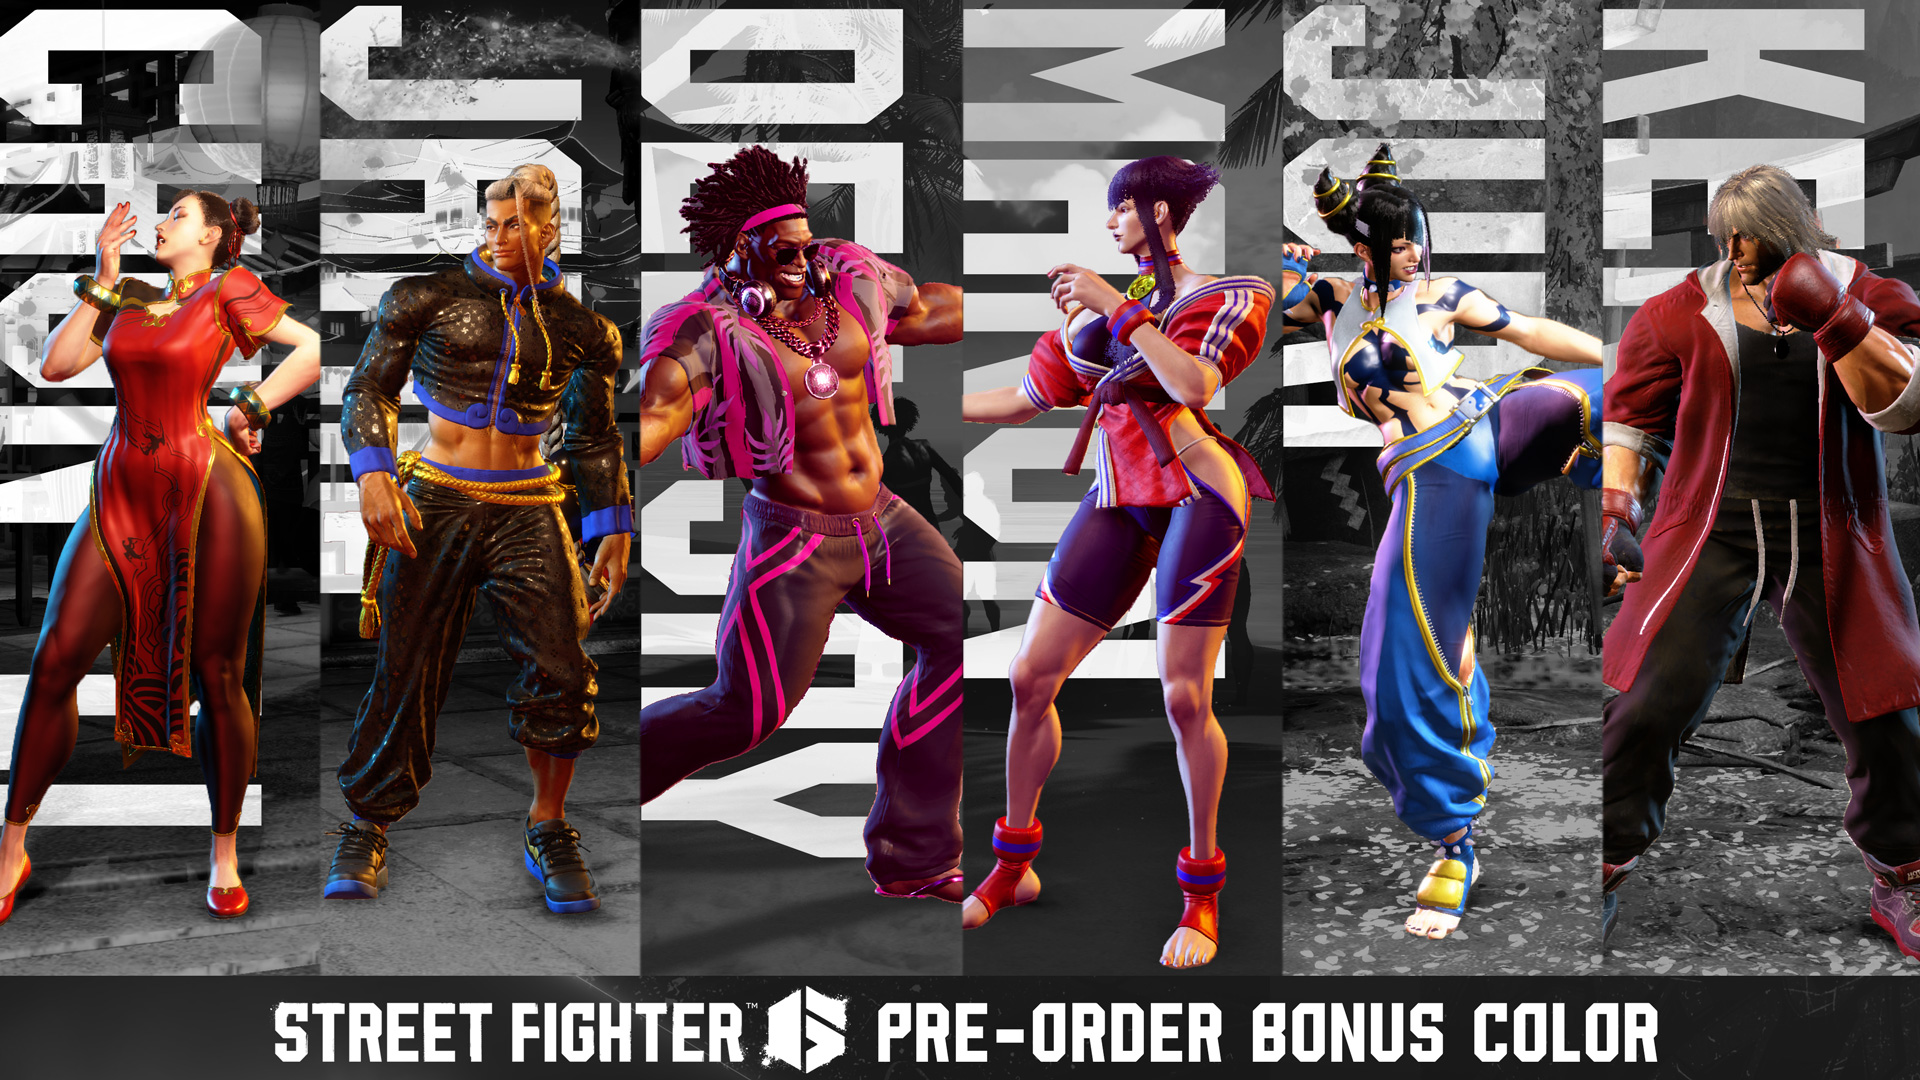 Street Fighter 6 tem novo trailer, lutadores anunciados e data de  lançamento definida - Outer Space